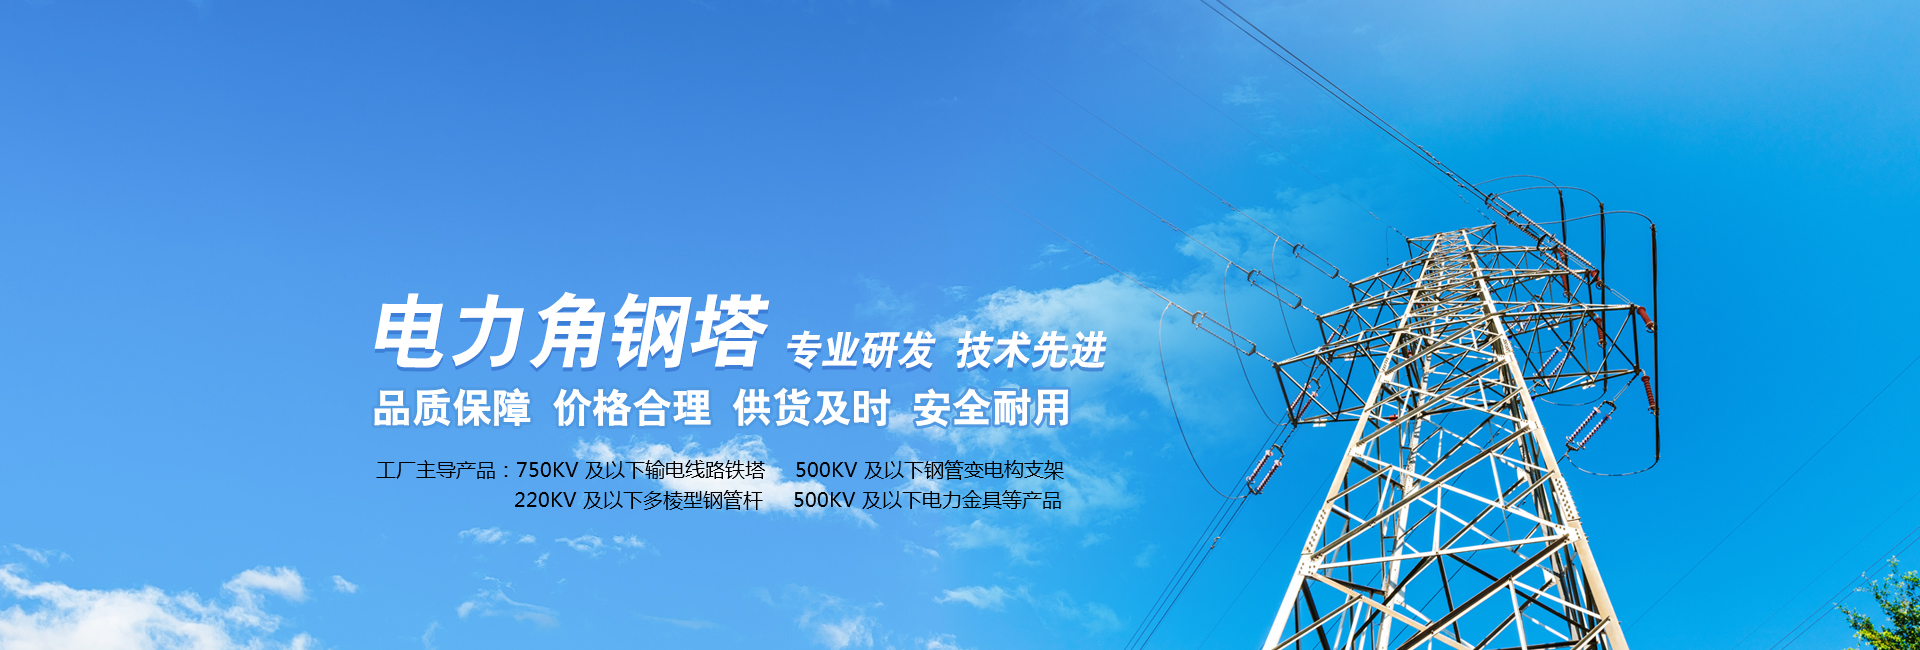  錦州電力線路器材是一家電力角鋼塔、電力金具鐵附件廠家